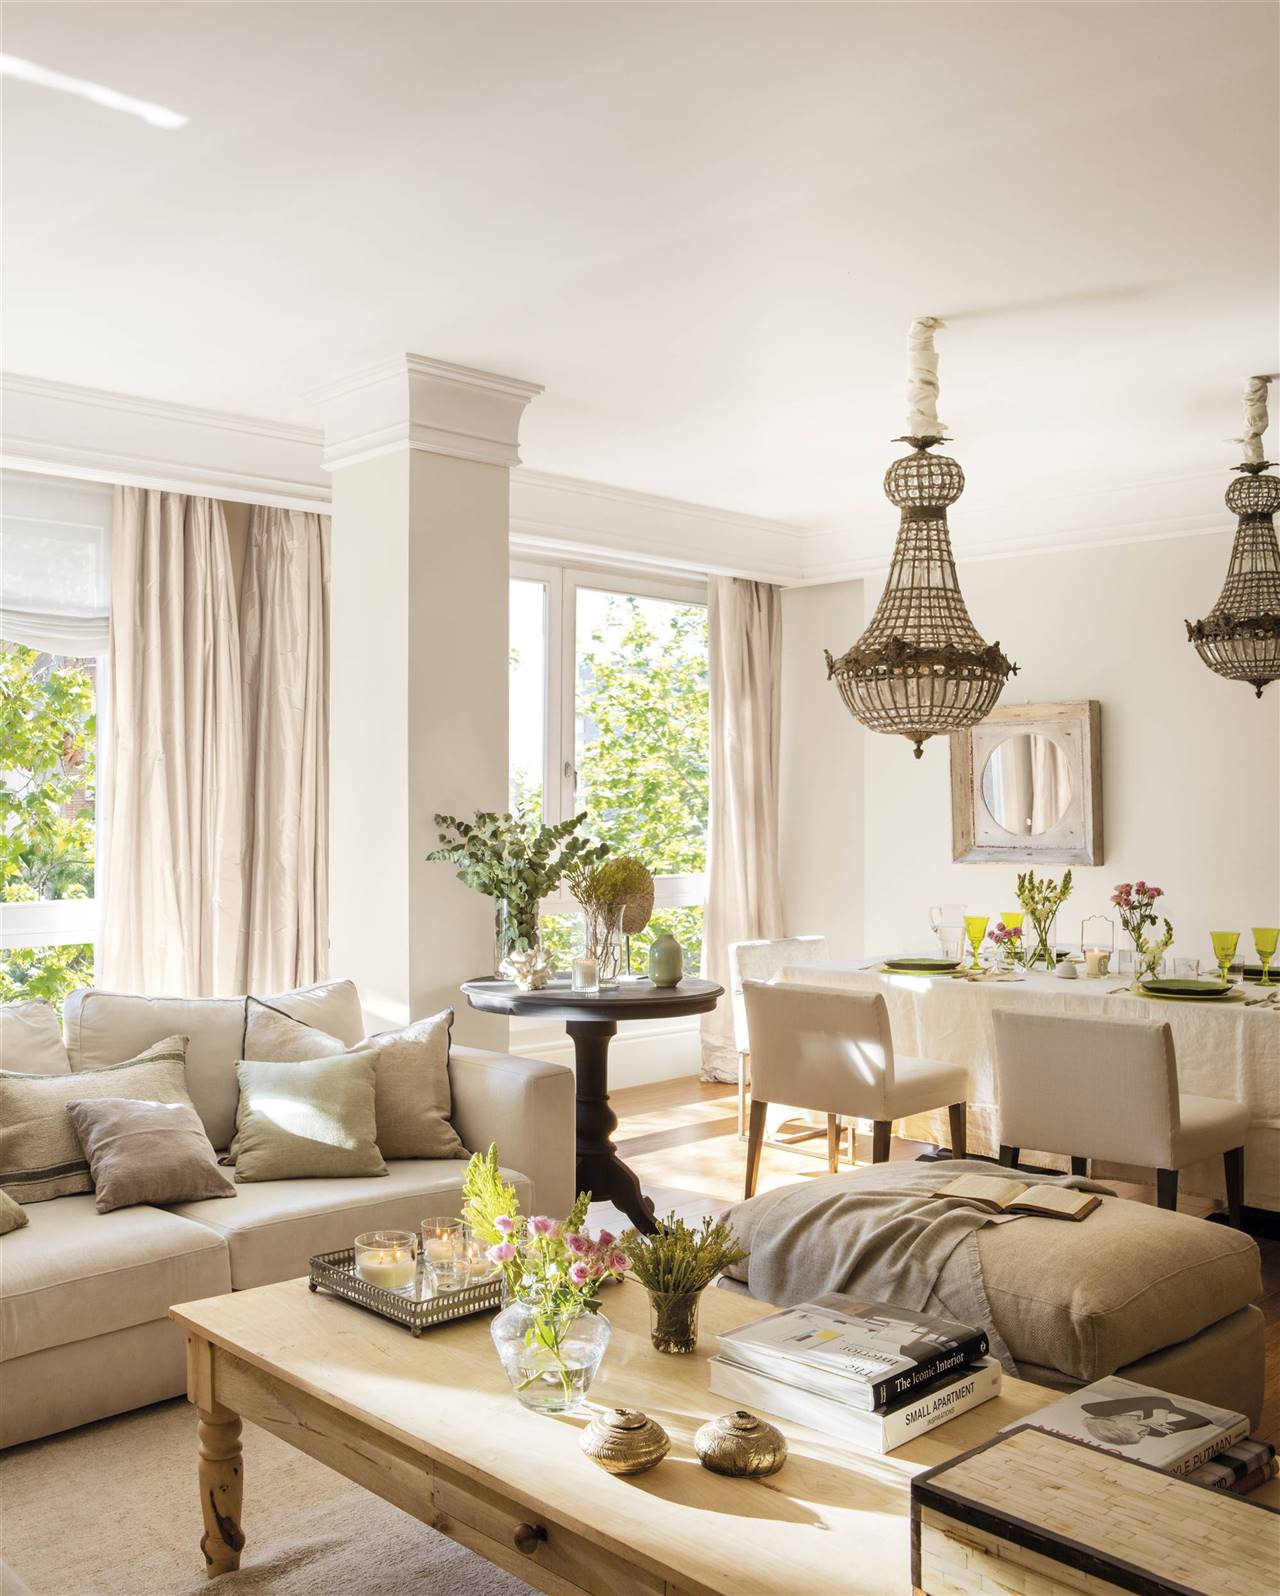 salon comedor de estilo clasico con sofás beige y mesa de centro de madera 00543289